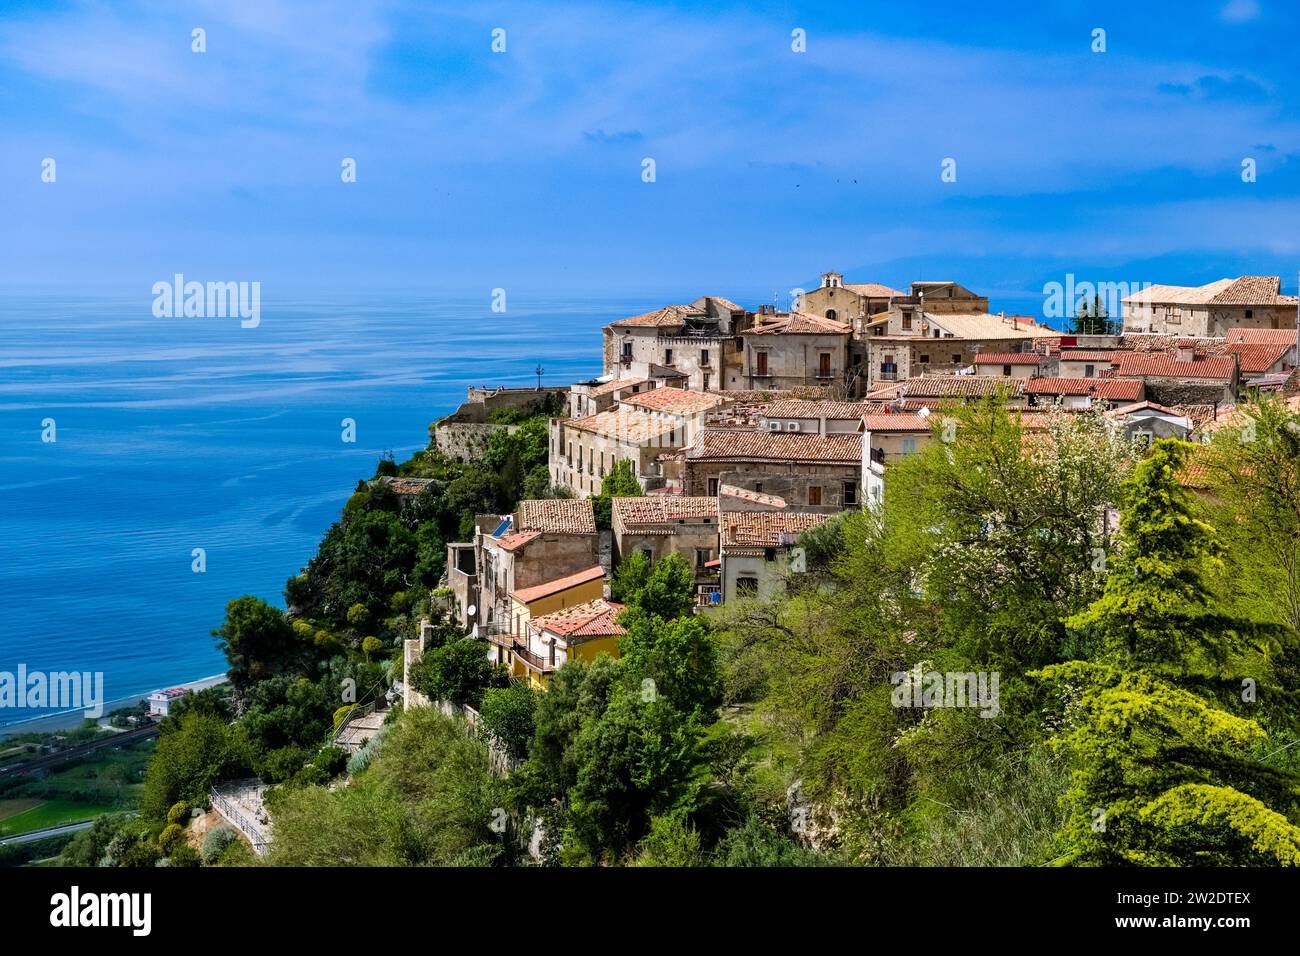 Häuser der kleinen Stadt Fiumefreddo Bruzio, die auf einer felsigen Klippe mit Blick auf das Mittelmeer liegt. Stockfoto